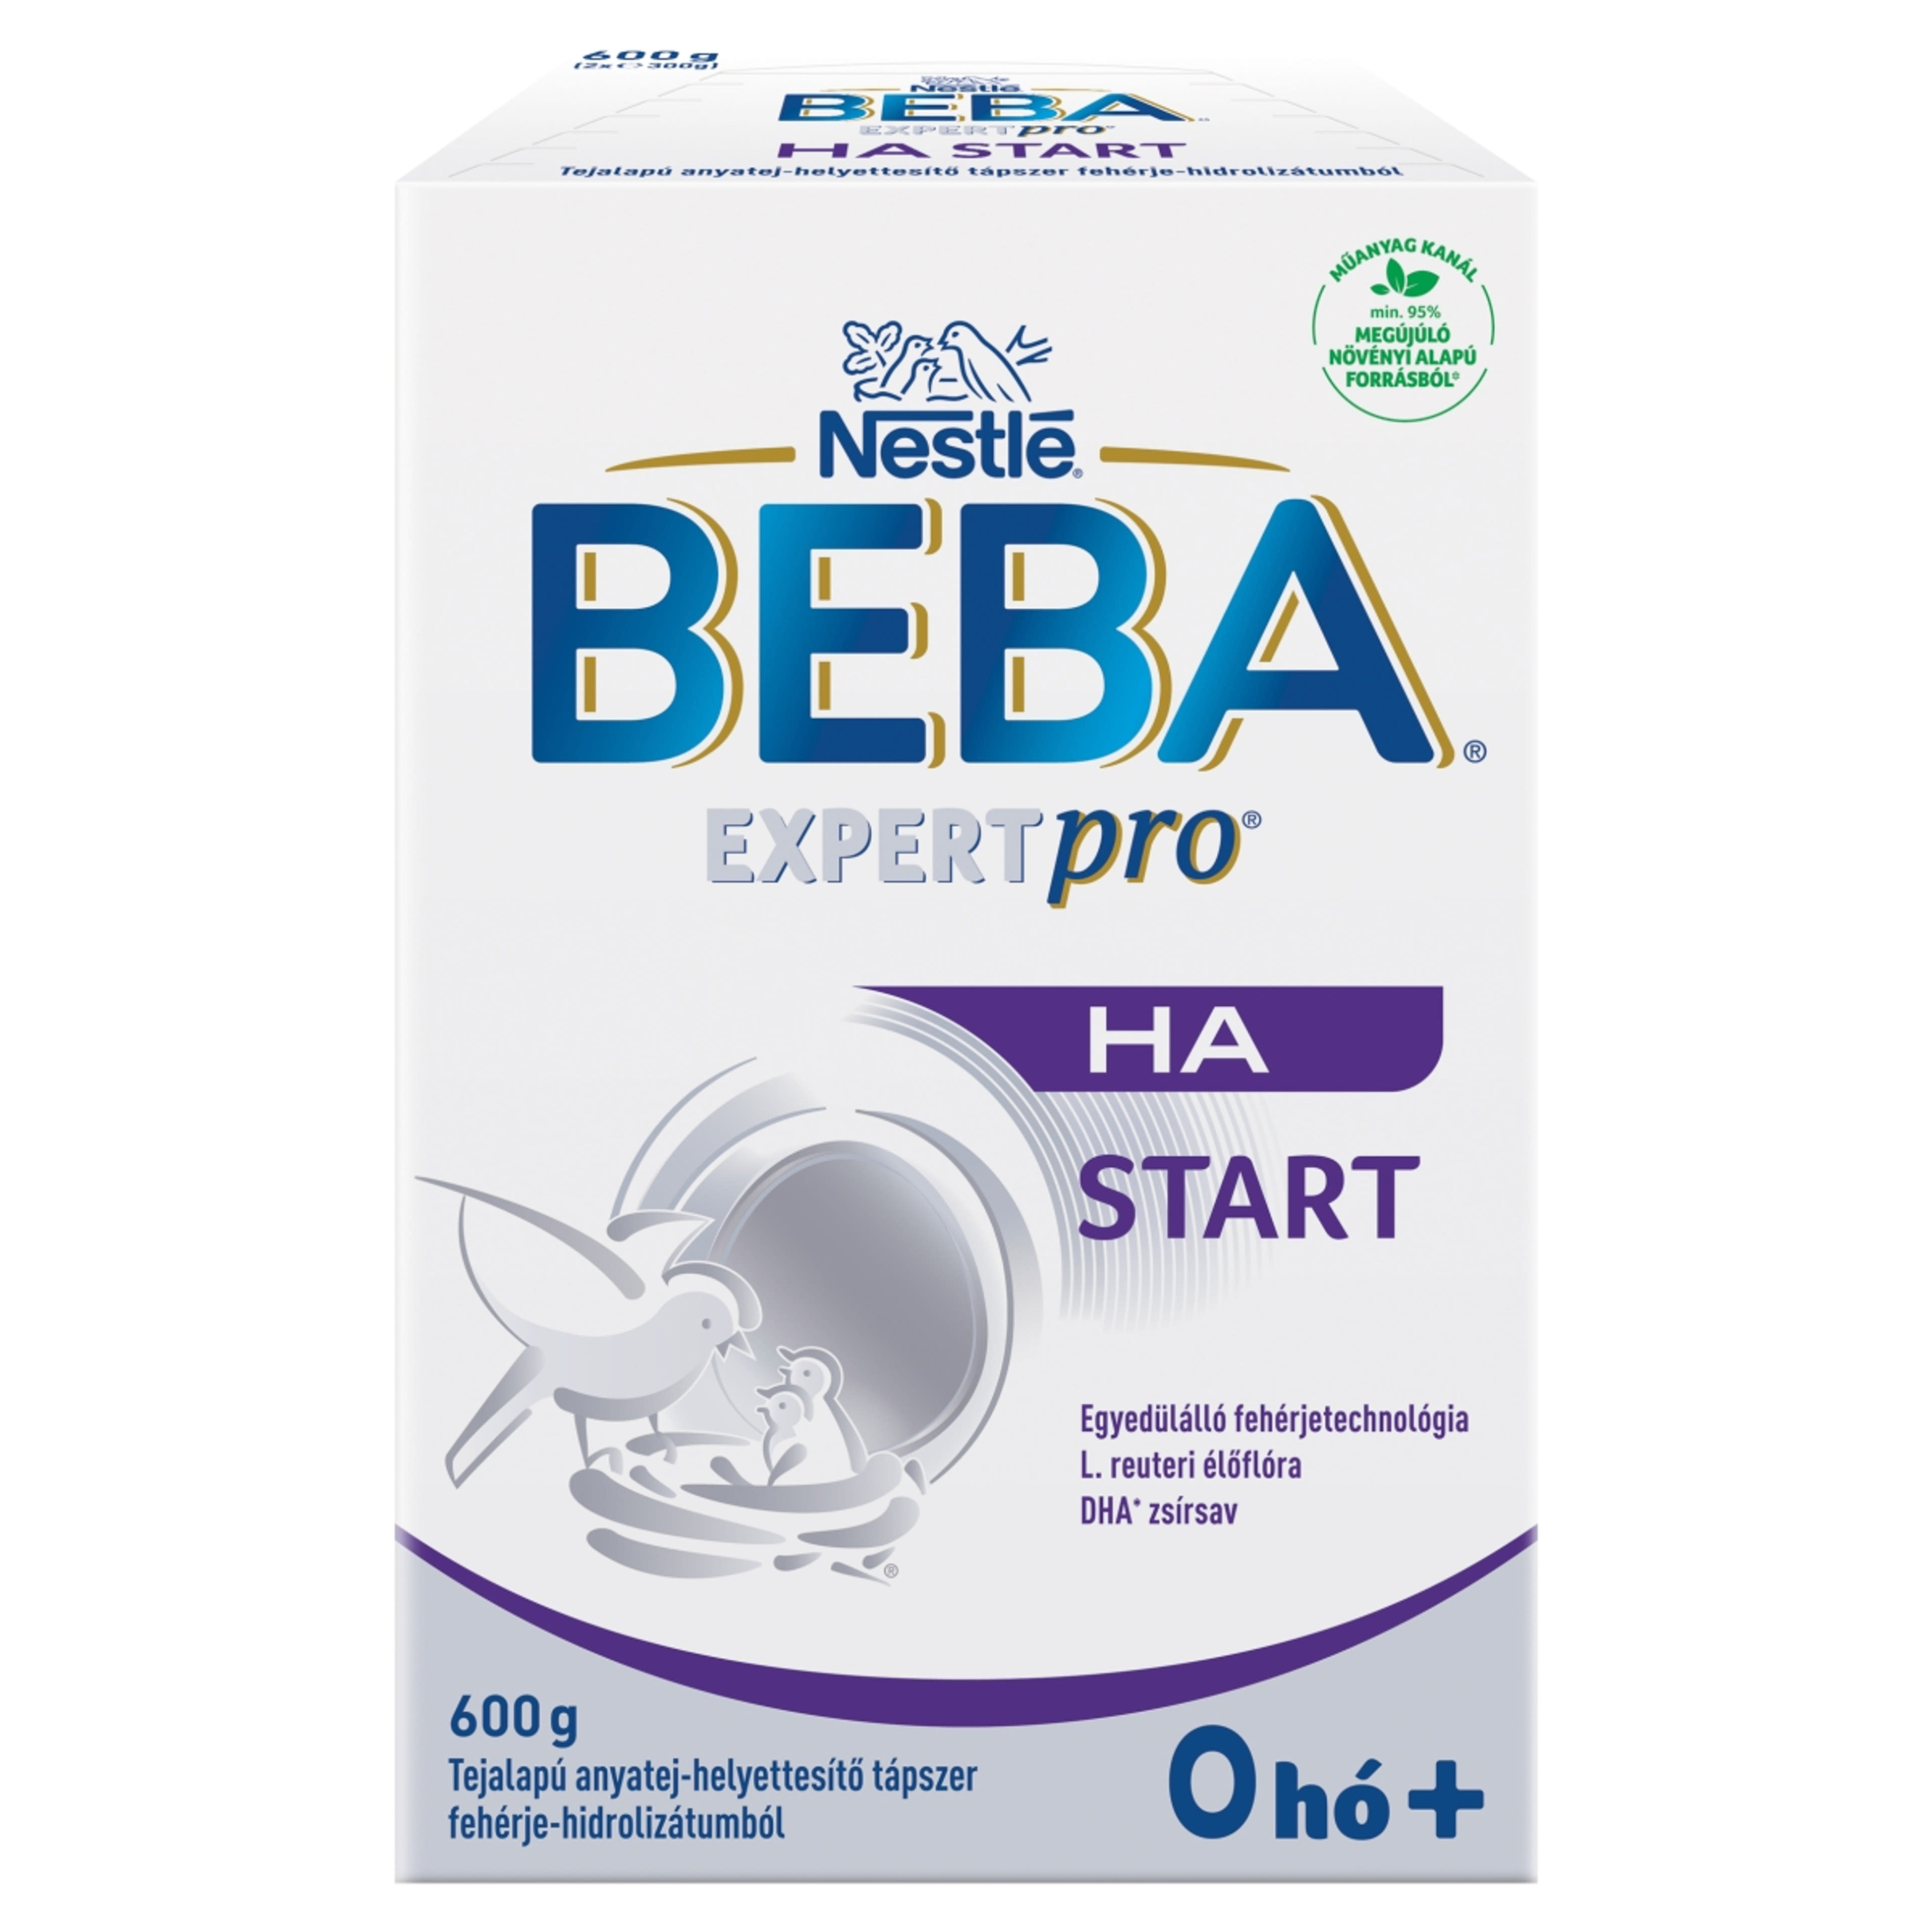 Beba Expertpro HA Start tejalapú anyatej-helyettesítő tápszer fehérje-hidrolizátumból 0 hónapos kortól -  600 g